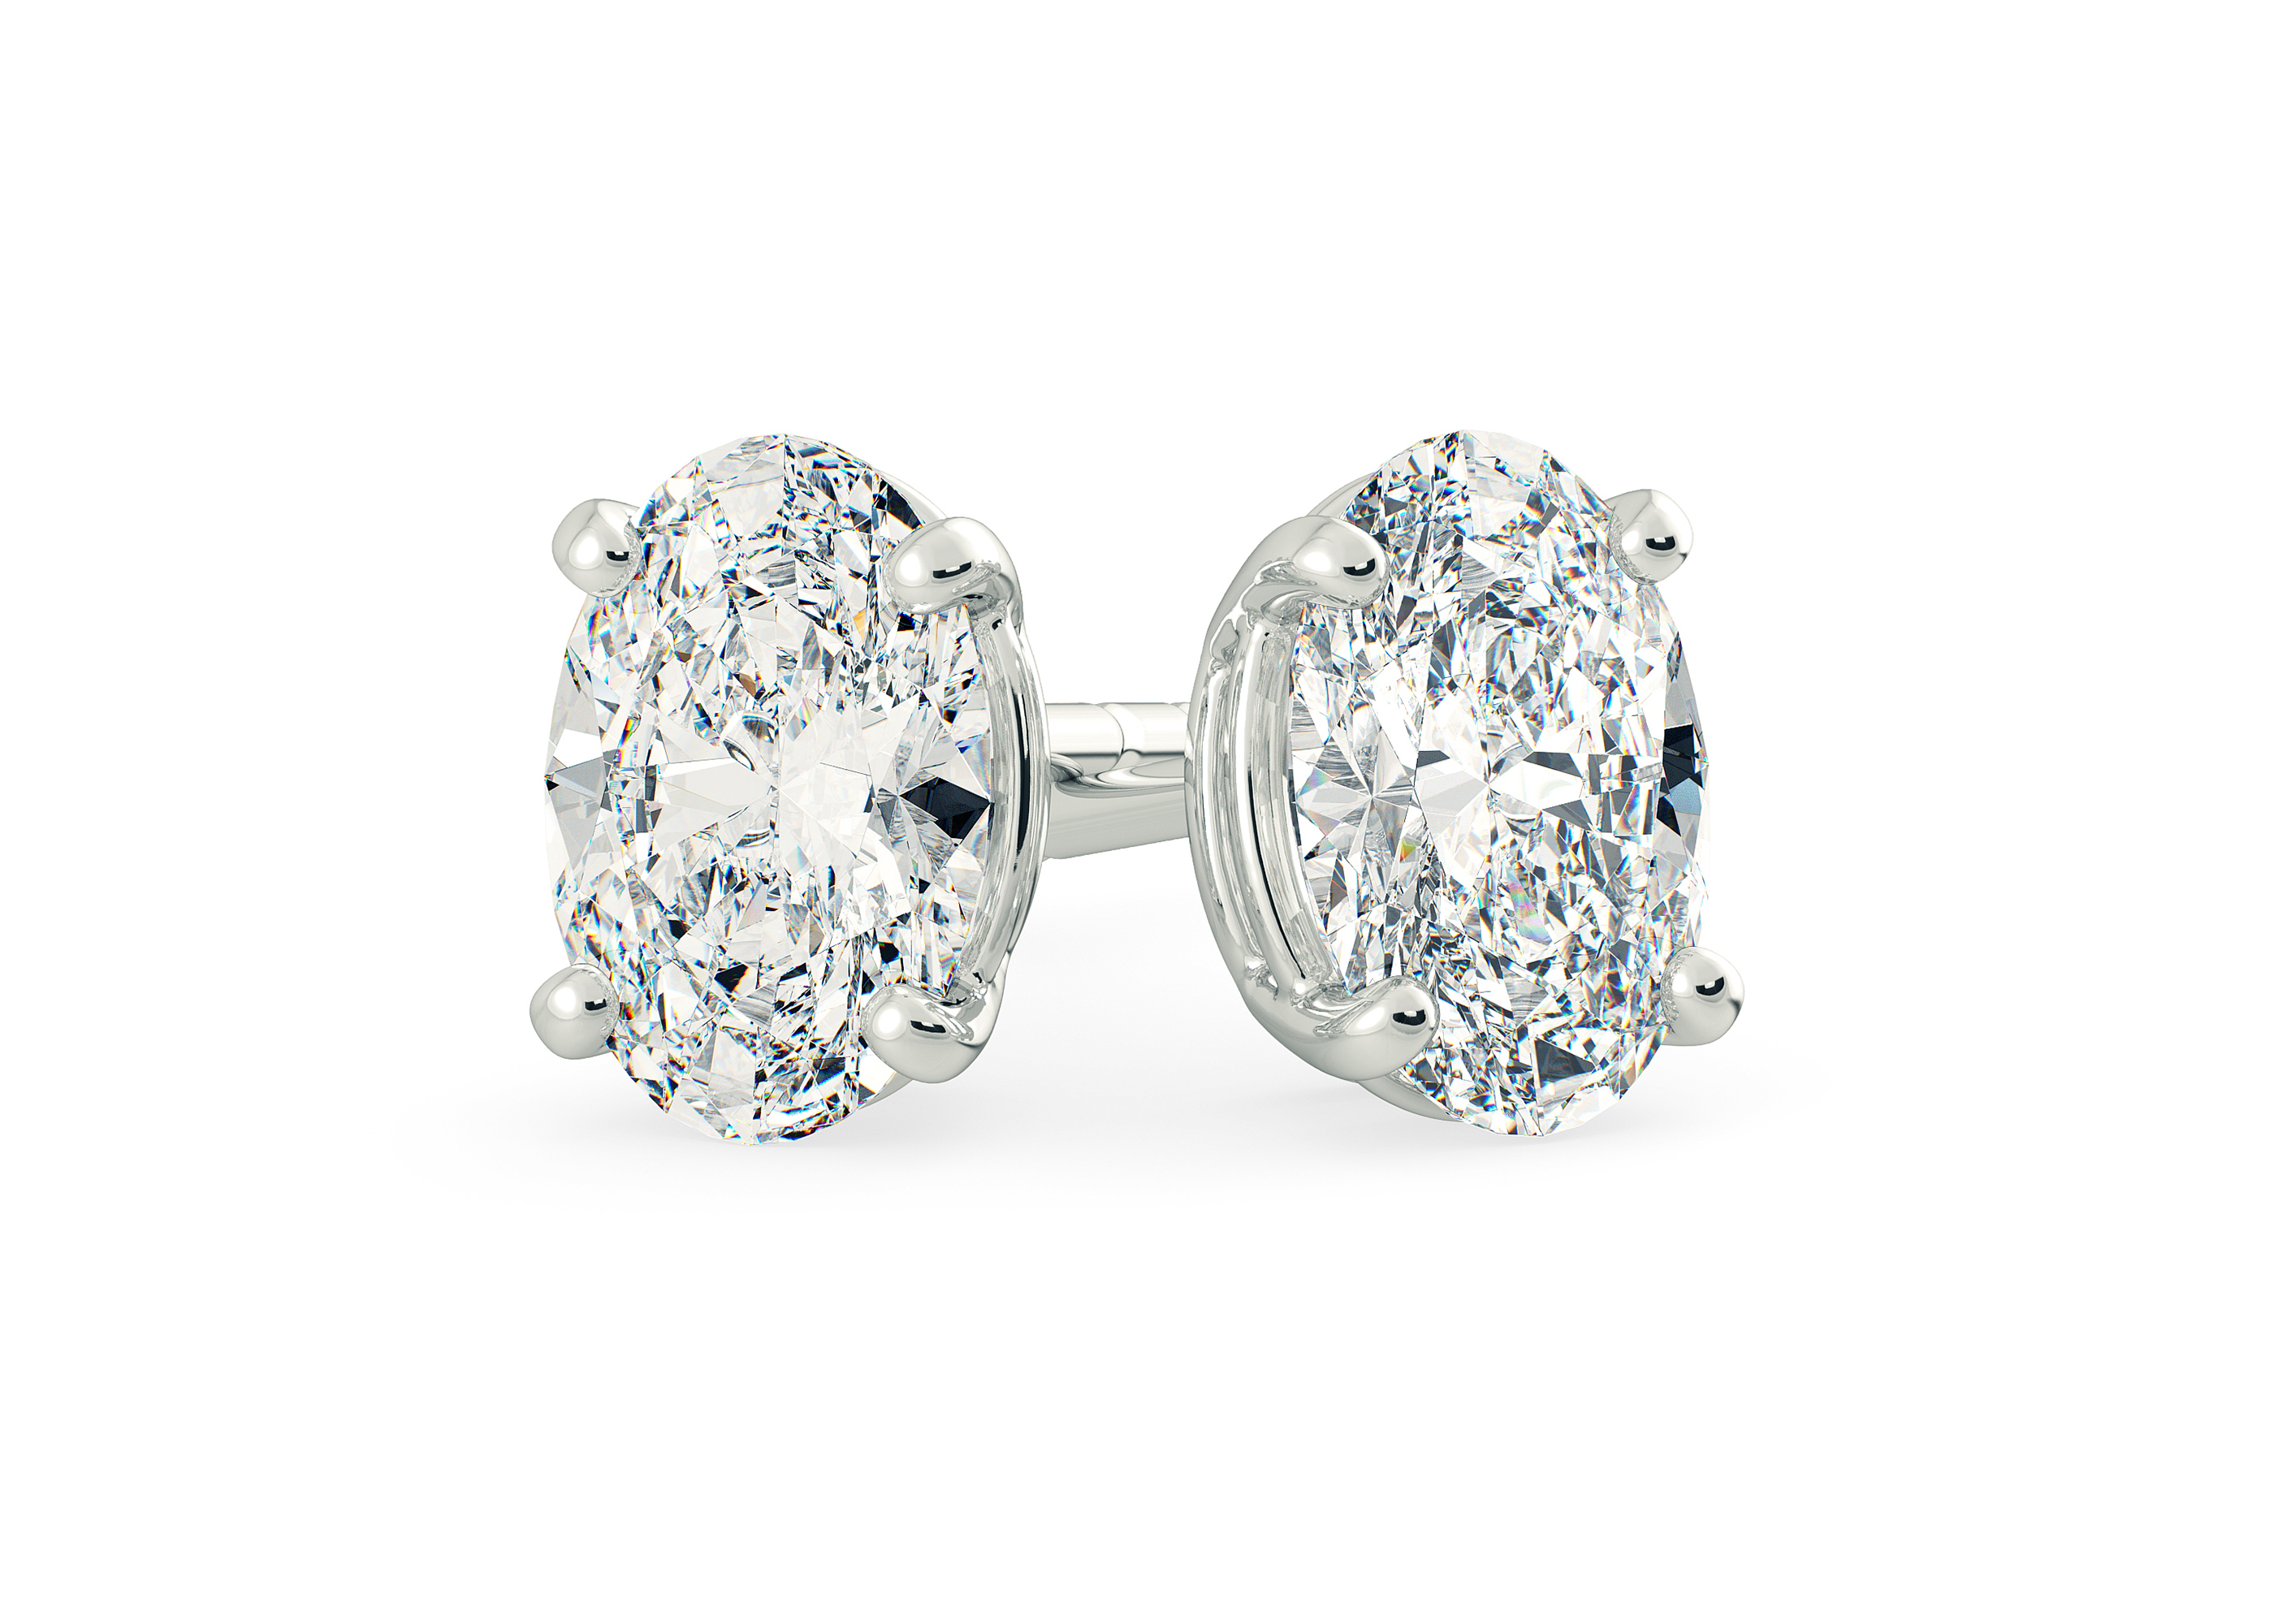 Two Carat Oval Diamond Stud Earrings in 9K White Gold